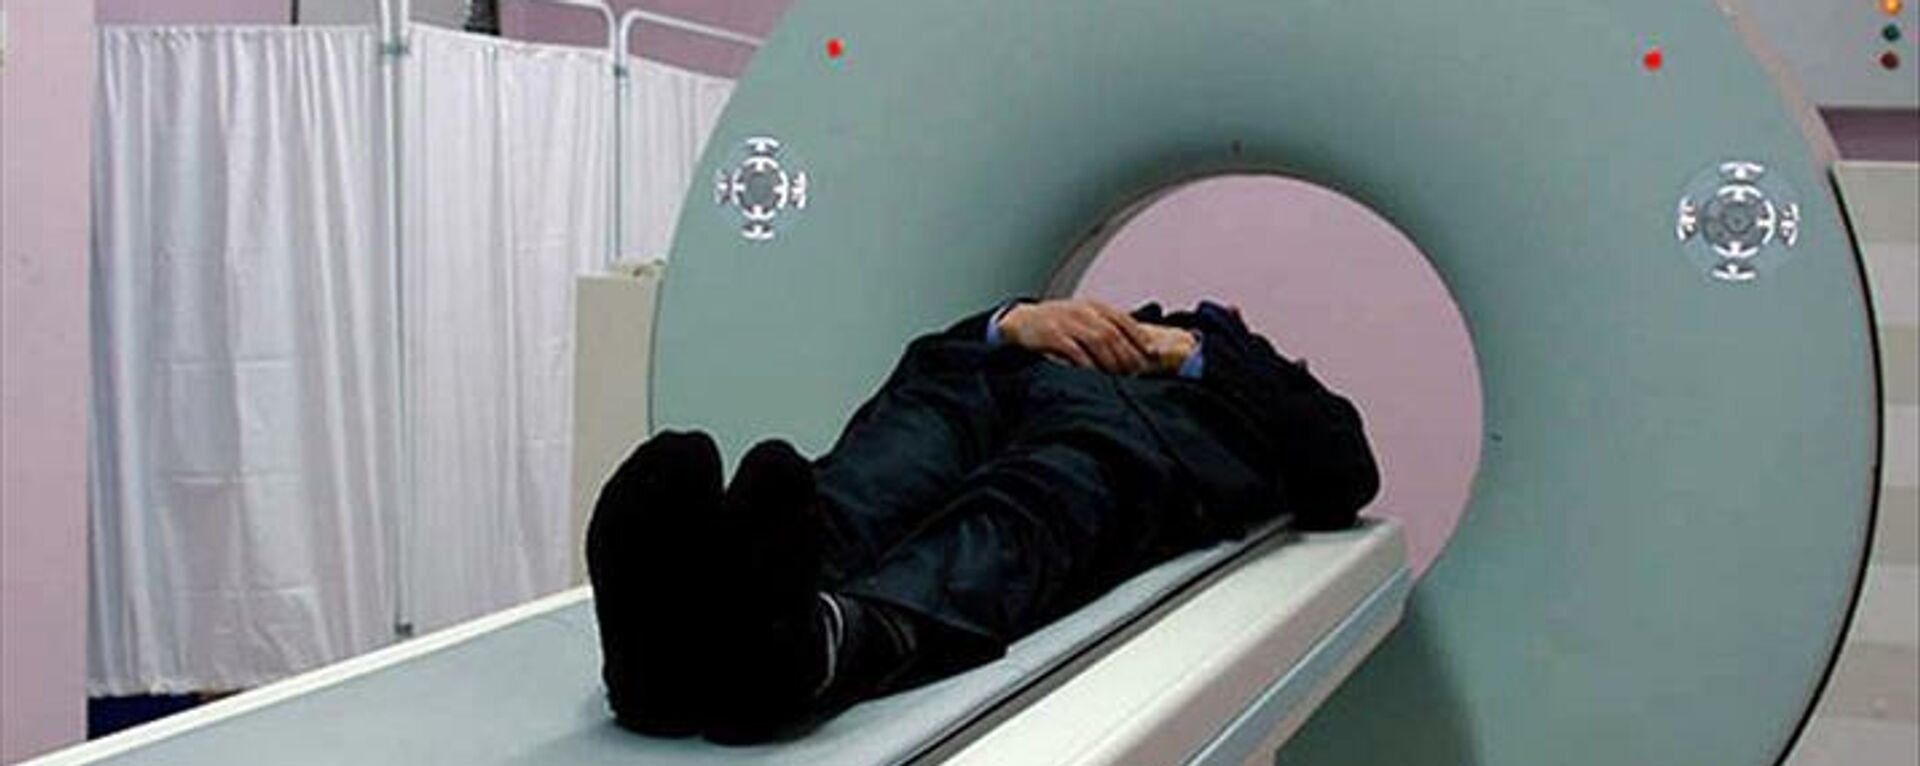 60 yaşındaki hasta, MRI makinesinin oksijen tüpünü yutması nedeniyle hayatını kaybetti - Sputnik Türkiye, 1920, 21.10.2021